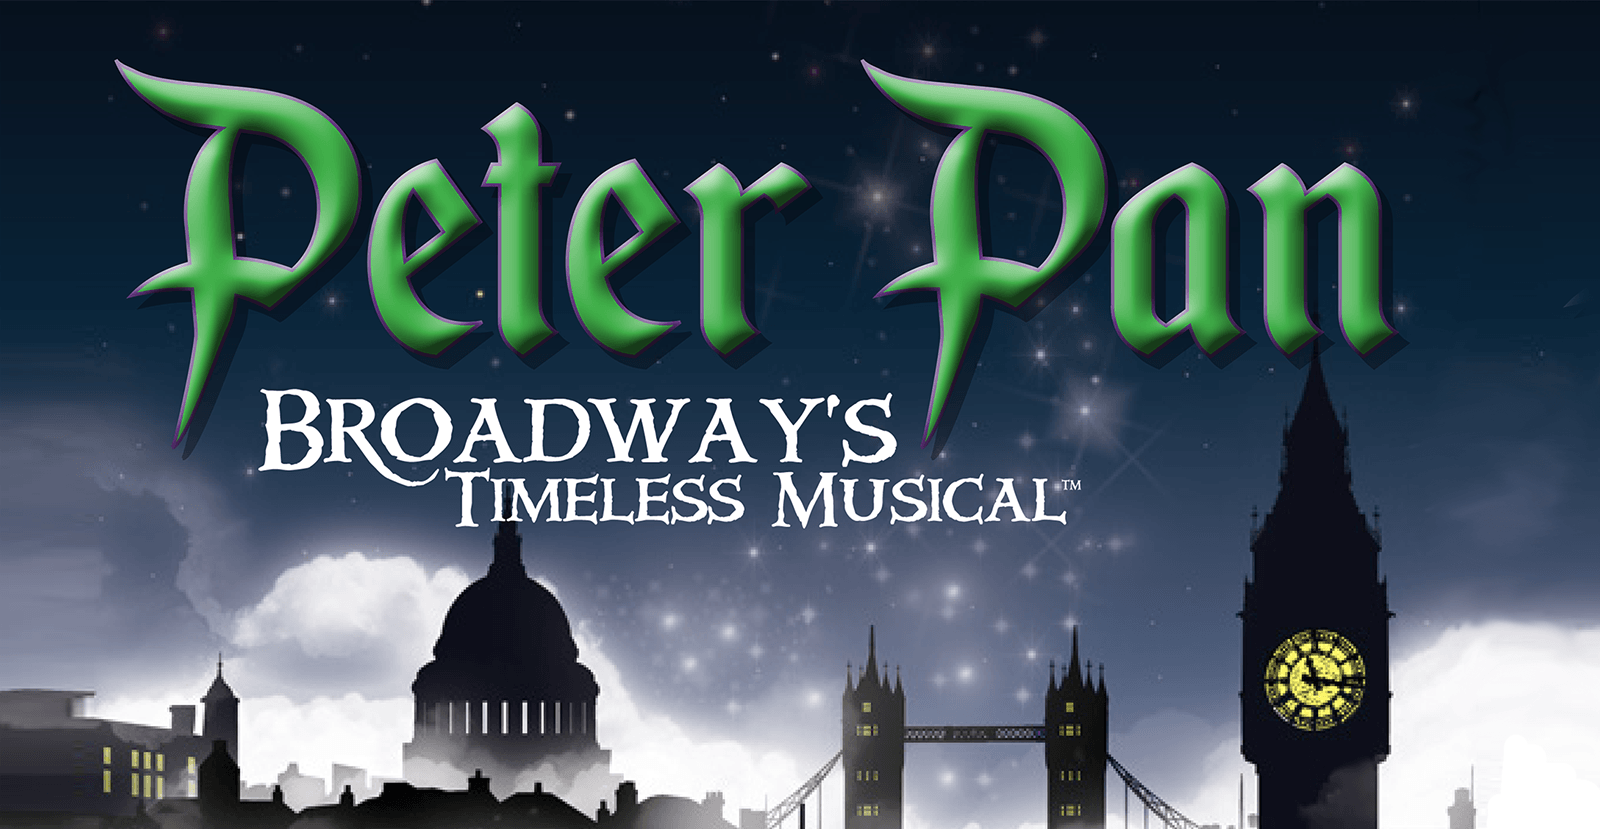 Peter Pan Musical Logo - Peter Pan. The Rose Theater